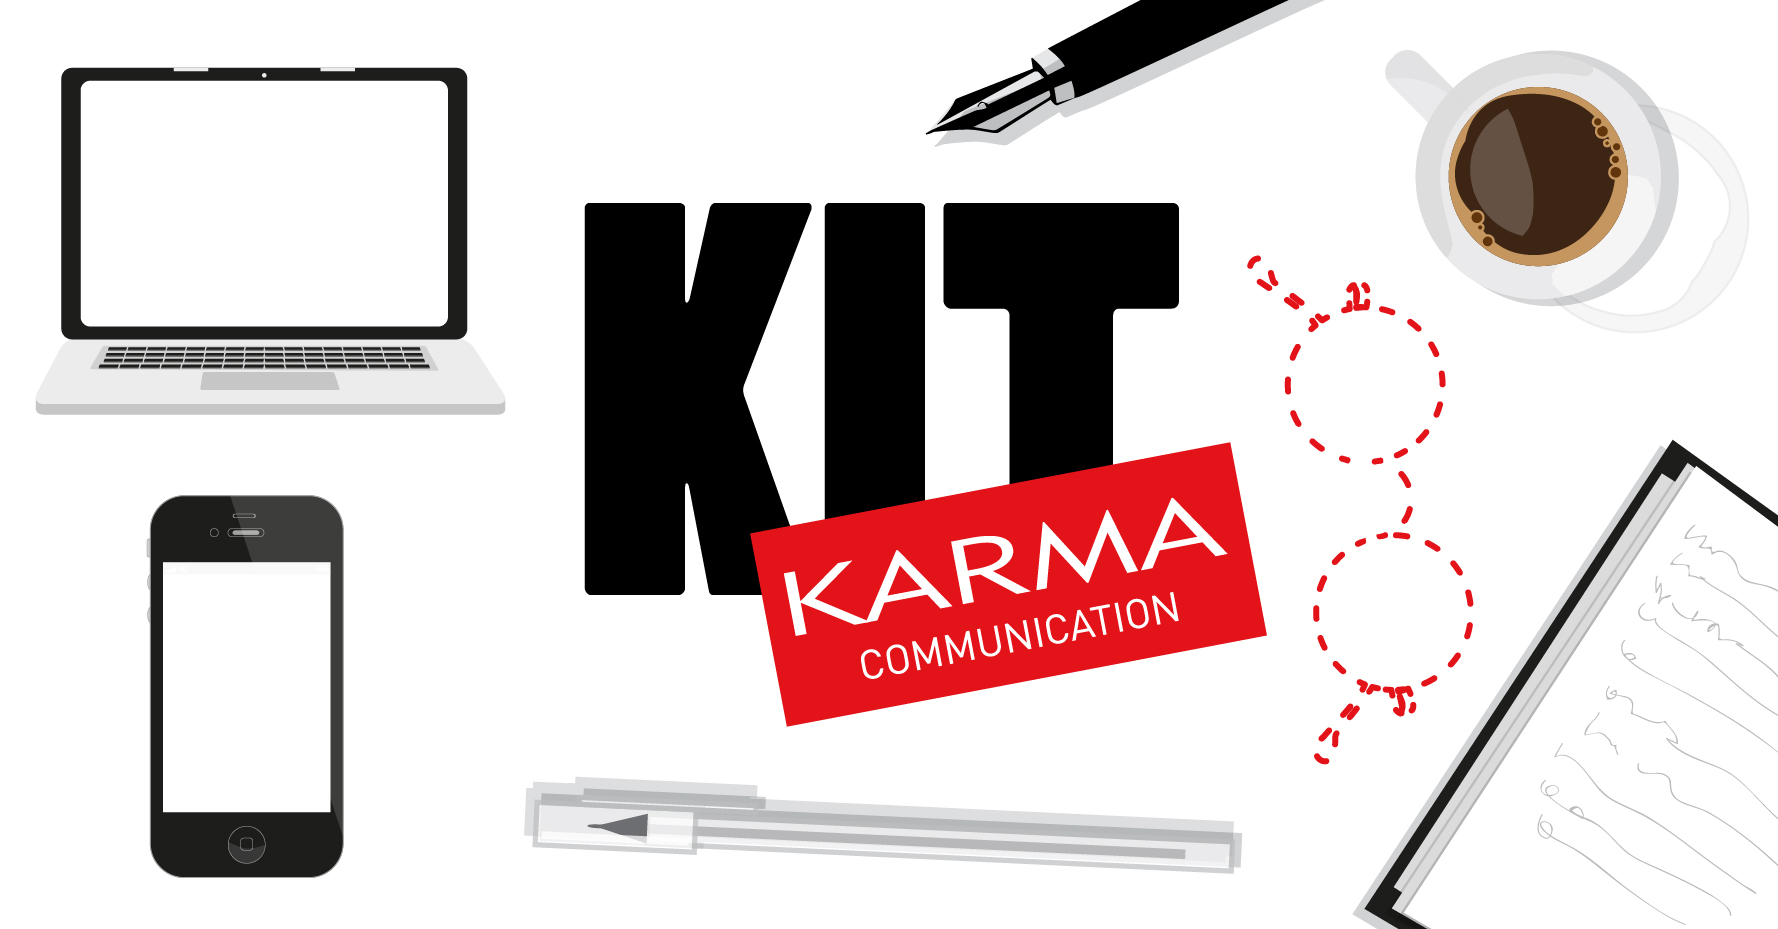 Karma Communication - L'ufficio mobile senza occhiali